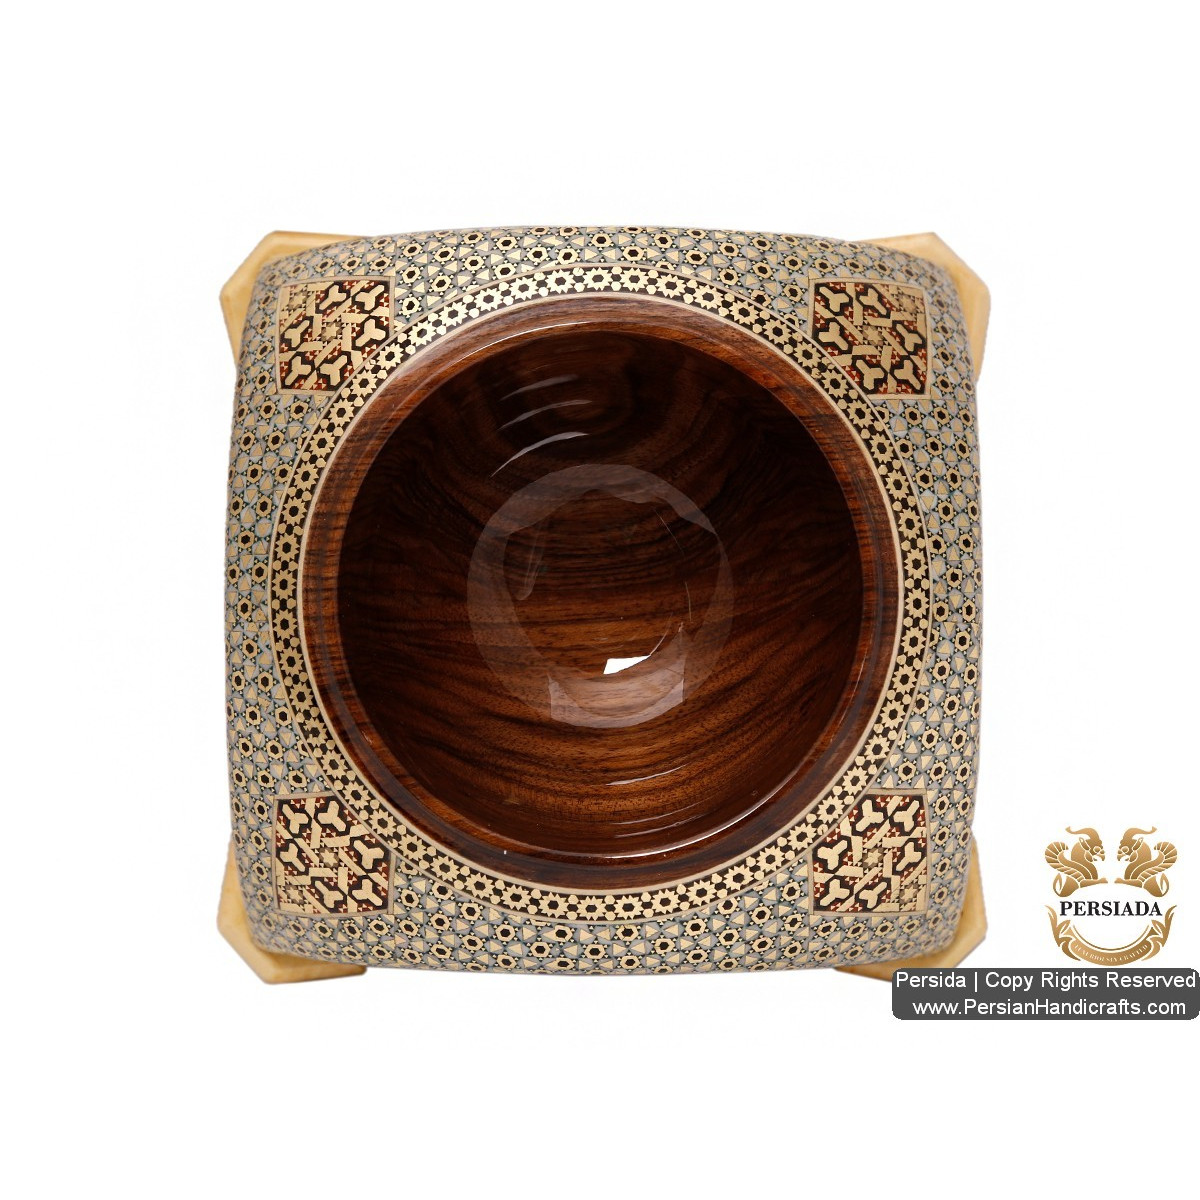 Iranian Arch Look Sugar Bowl | Khatam Marquetry | HKH520 Persiada